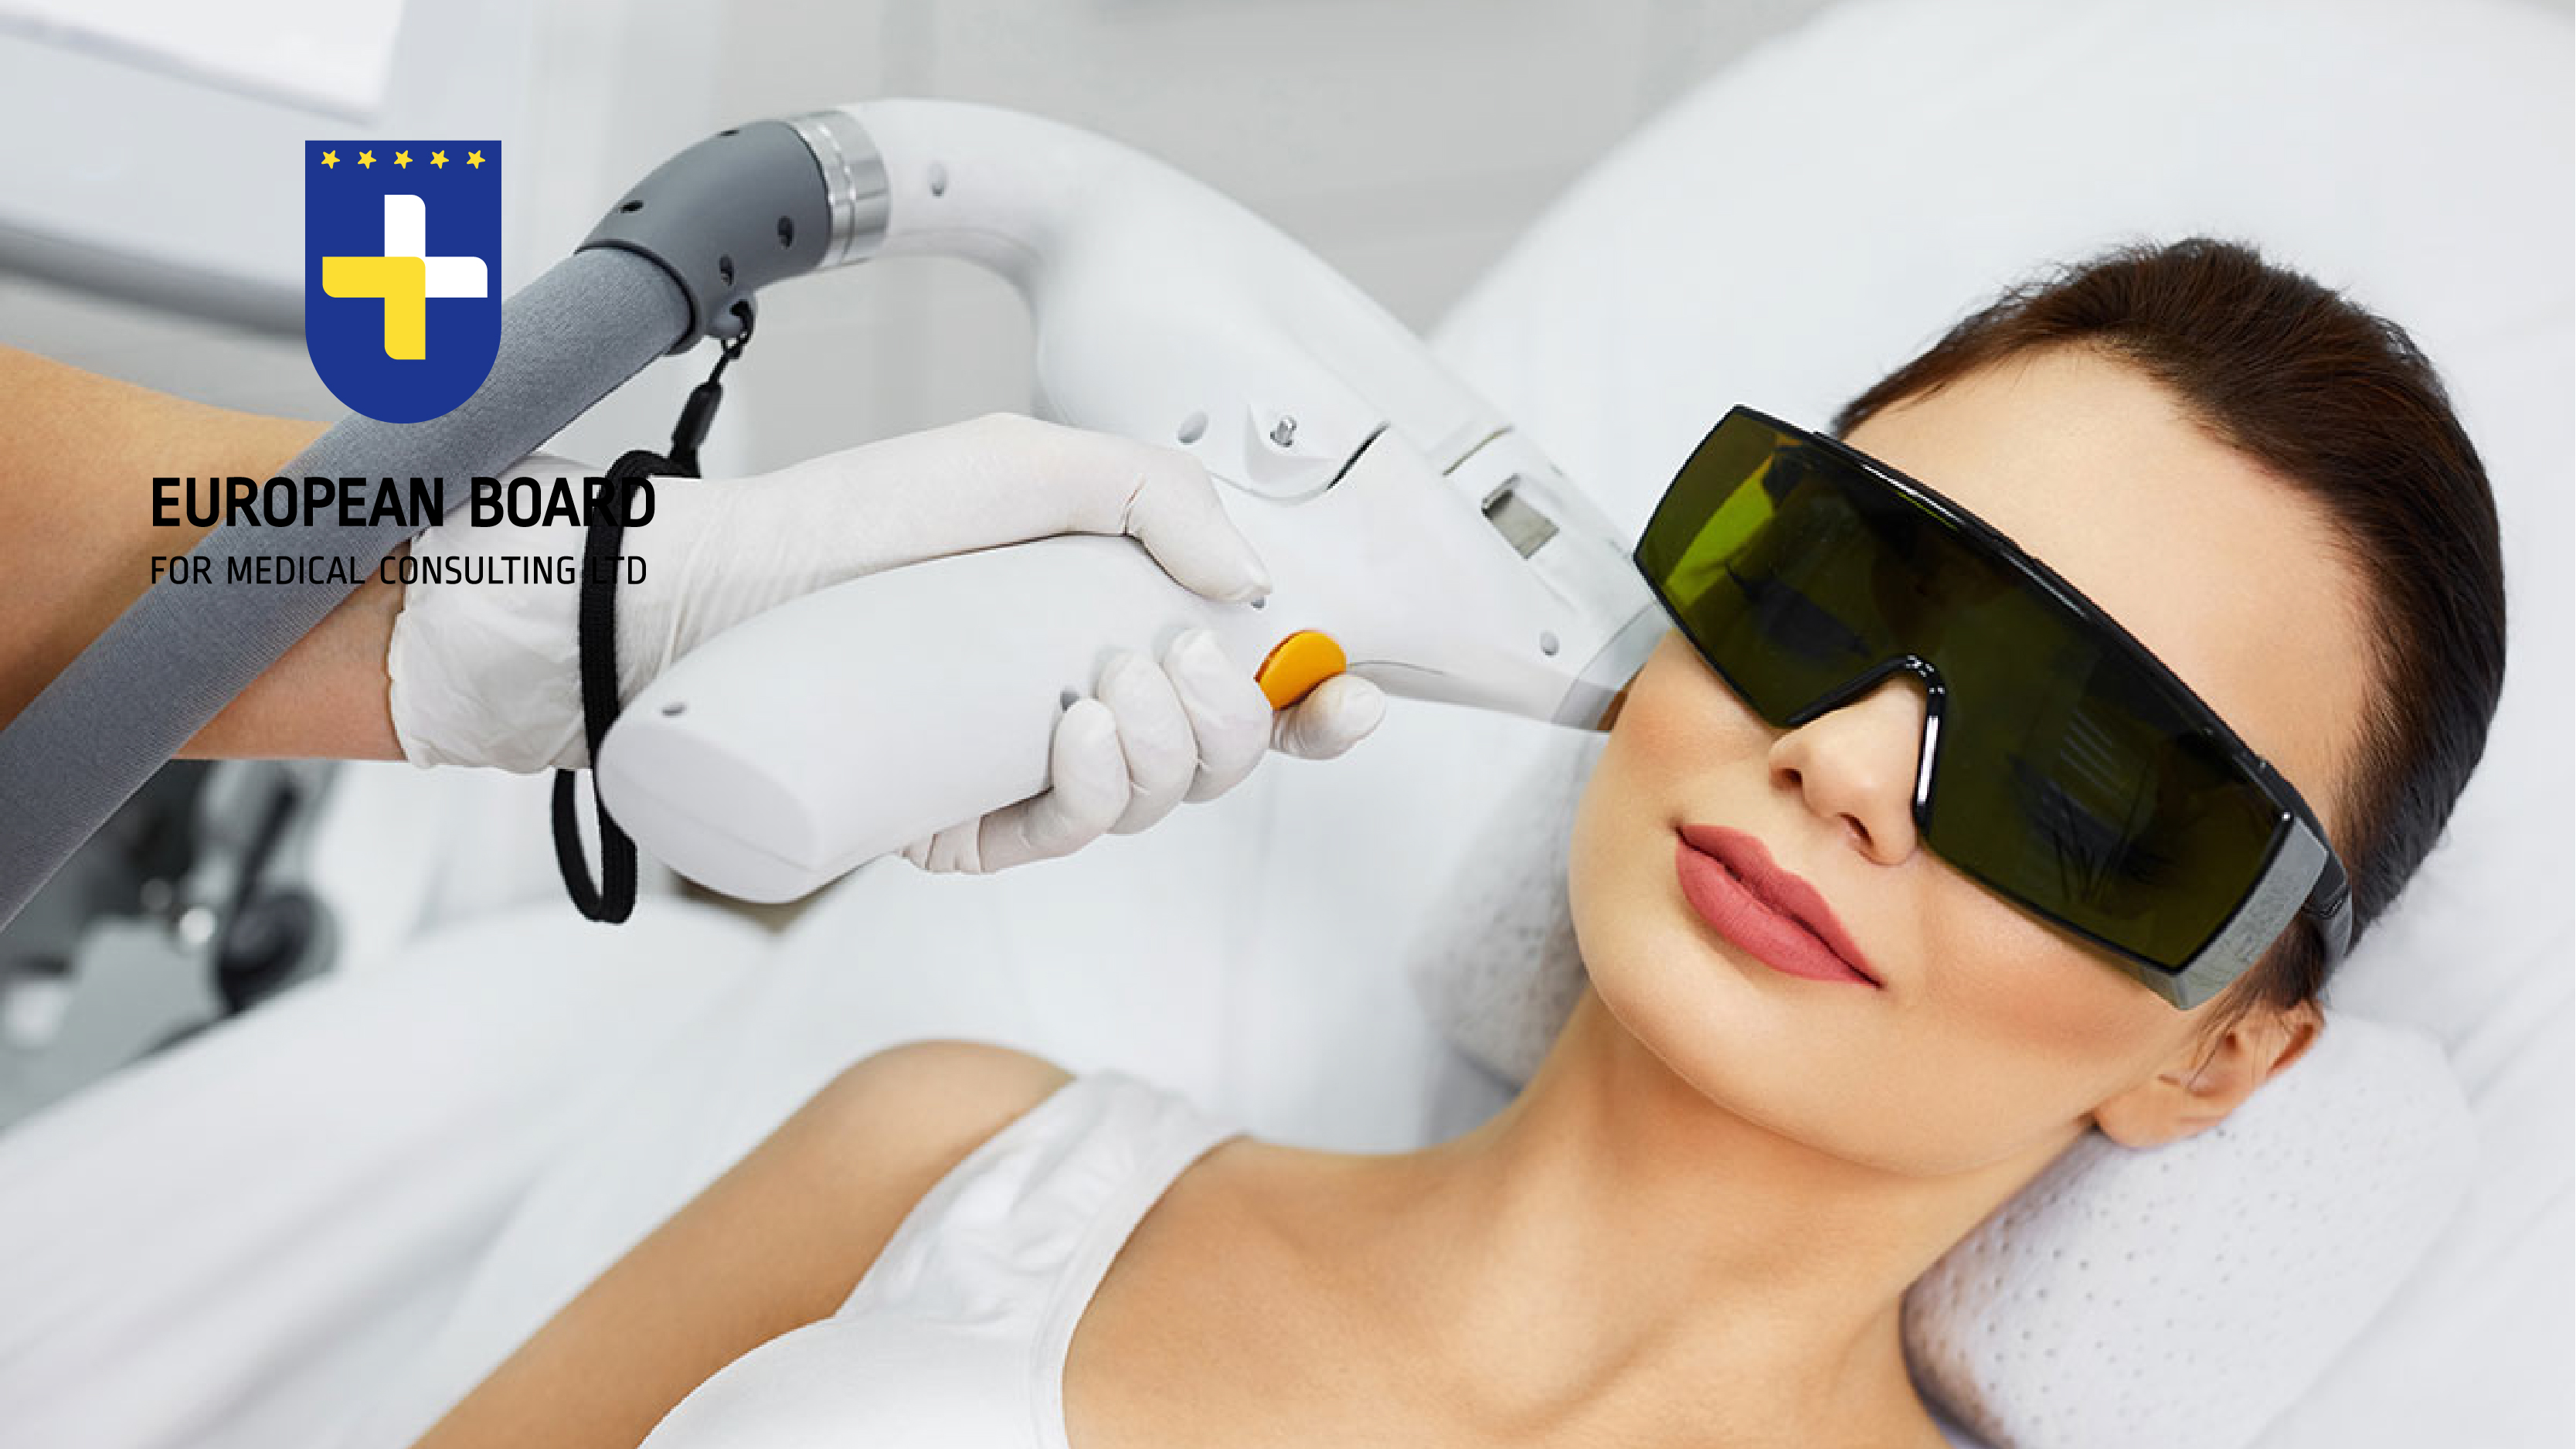 استخدام تكنولوجيا الليزر والأجهزة المتقدمة في التجميل غير الجراحي